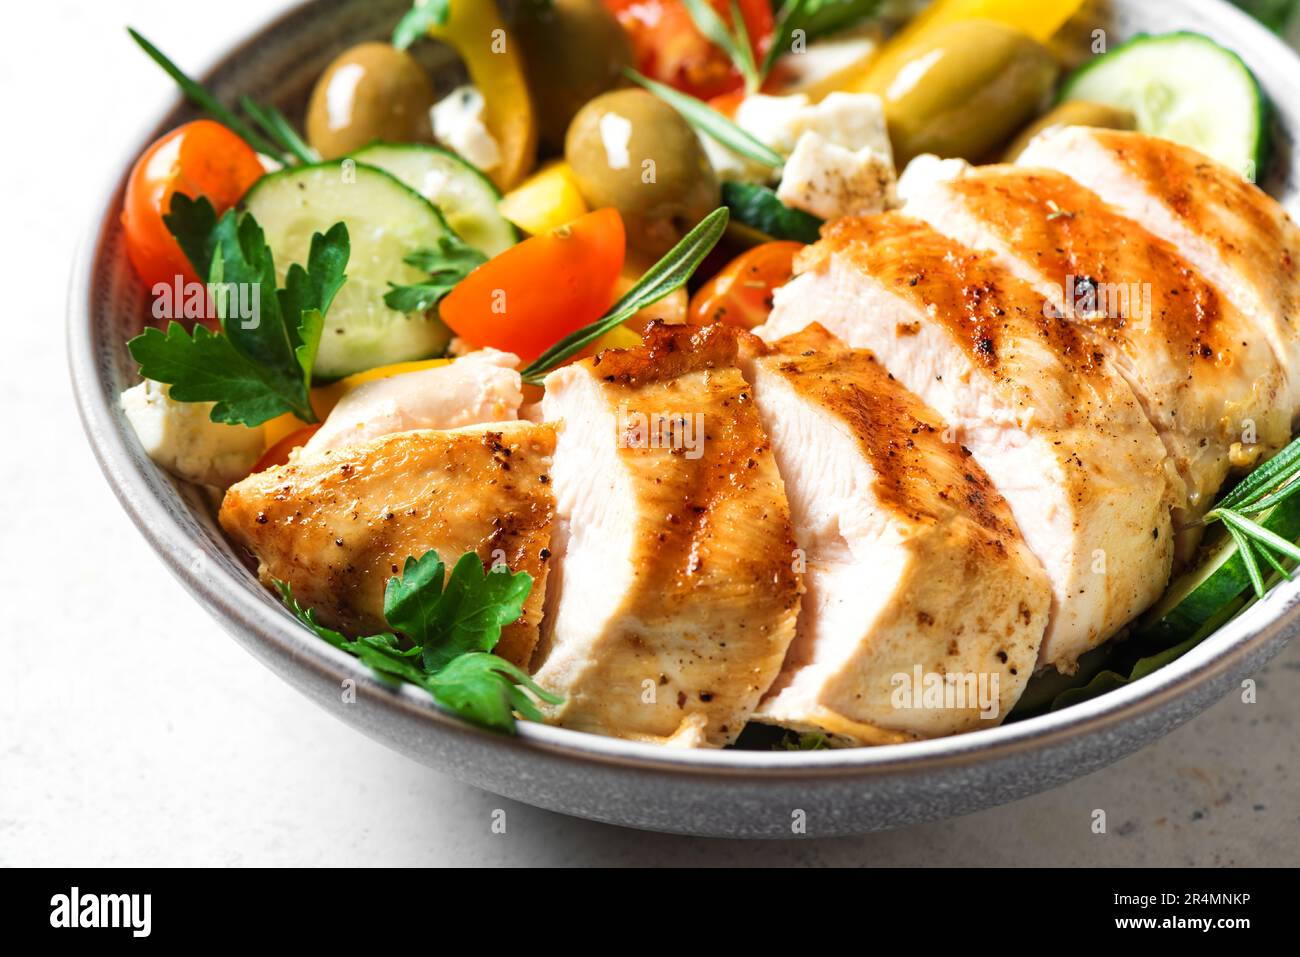 Gros plan sur le filet de poulet grillé et la salade grecque de légumes frais. Keto sain, repas cétogène - viande de poulet rôti, olives, feta, légumes Banque D'Images